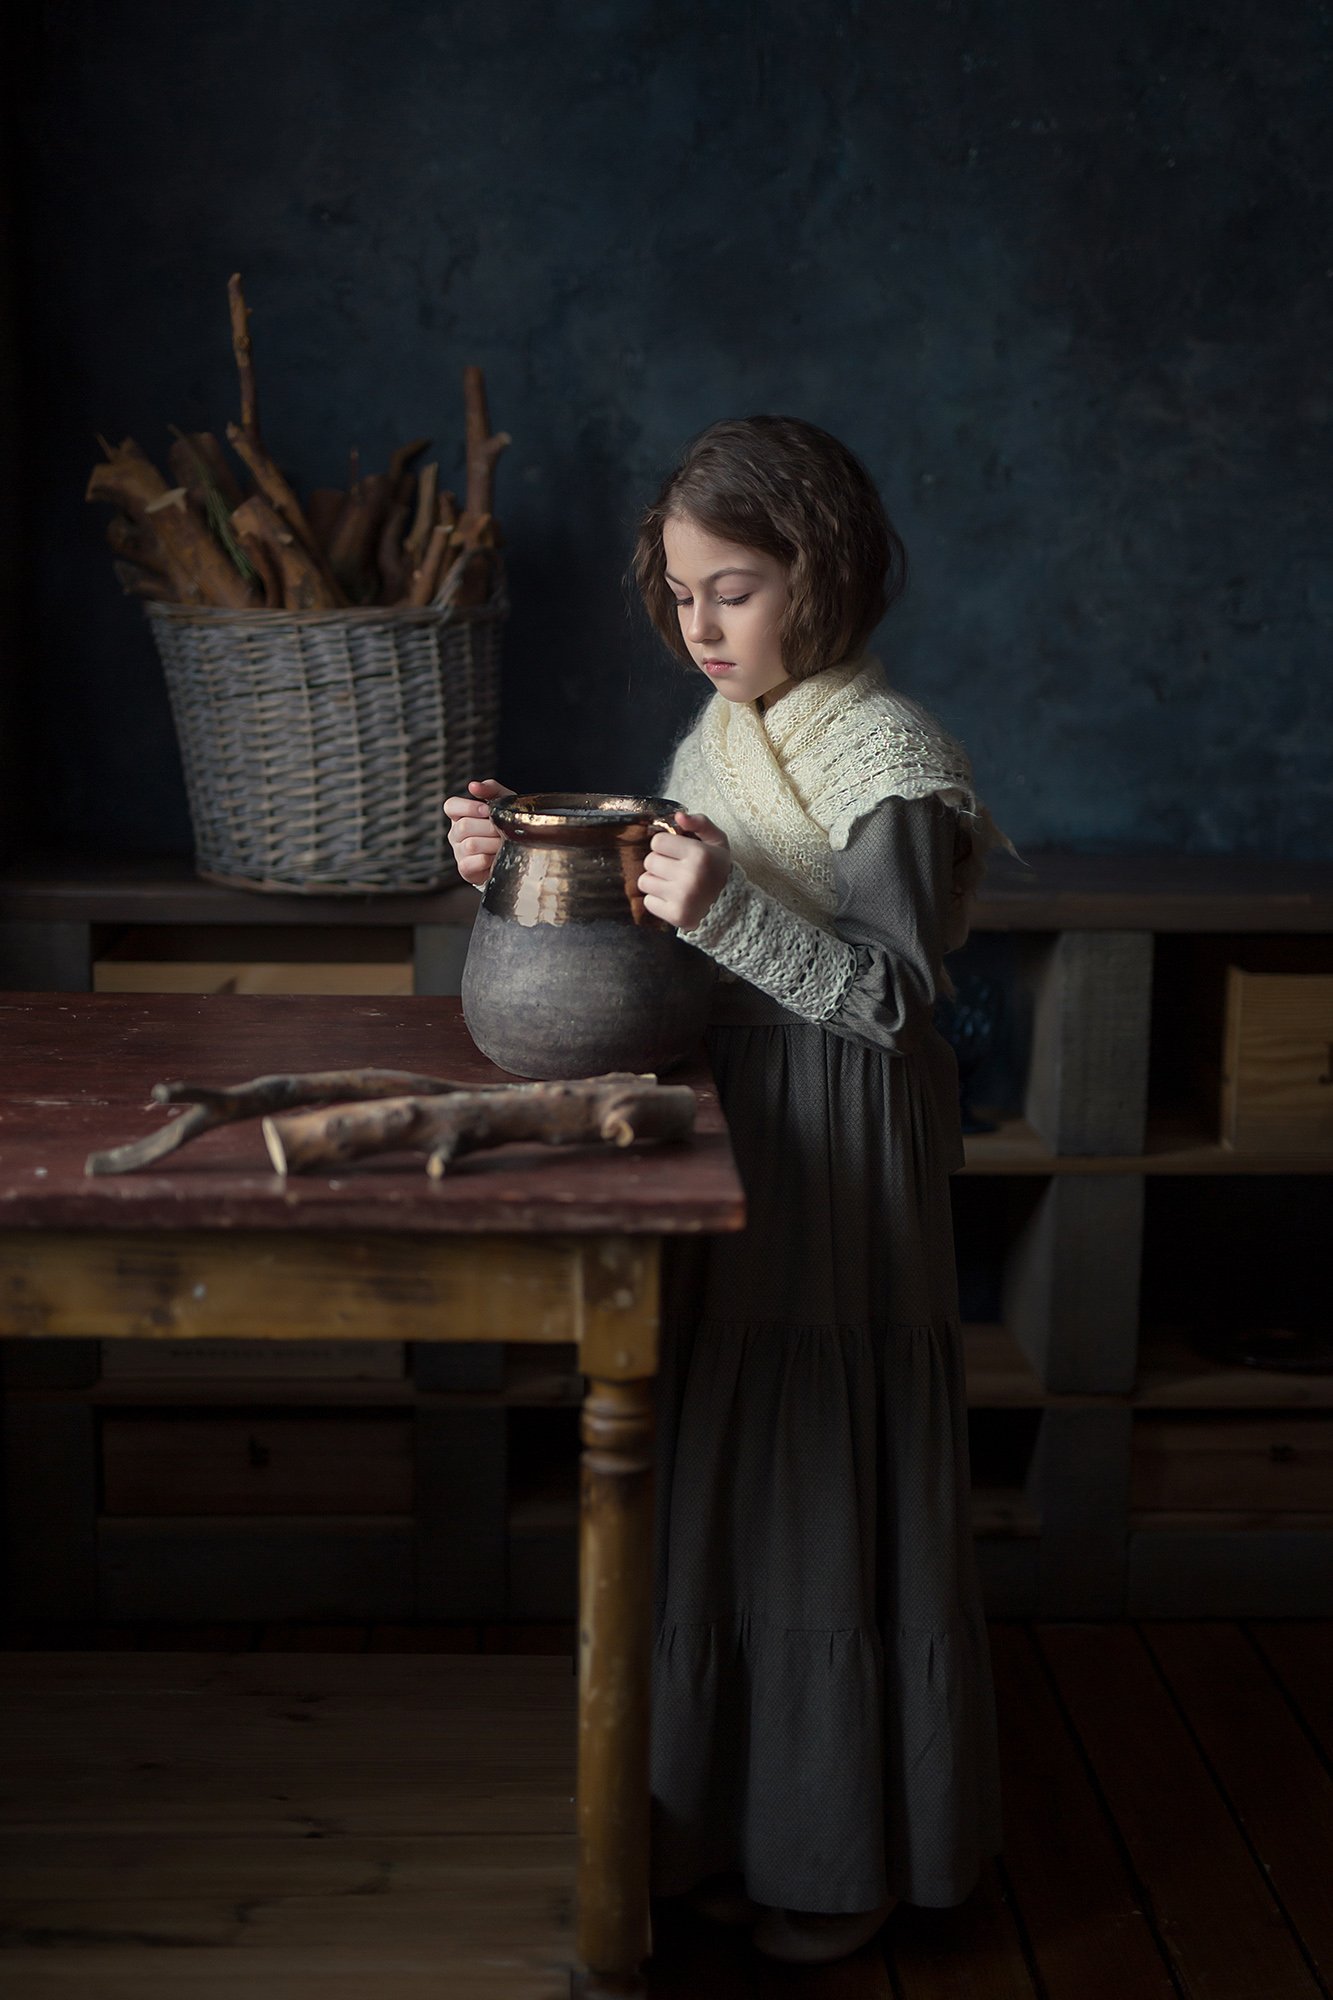 постановочная фотография, детский портрет, постановка, canon, 50mm, Наталья Русских